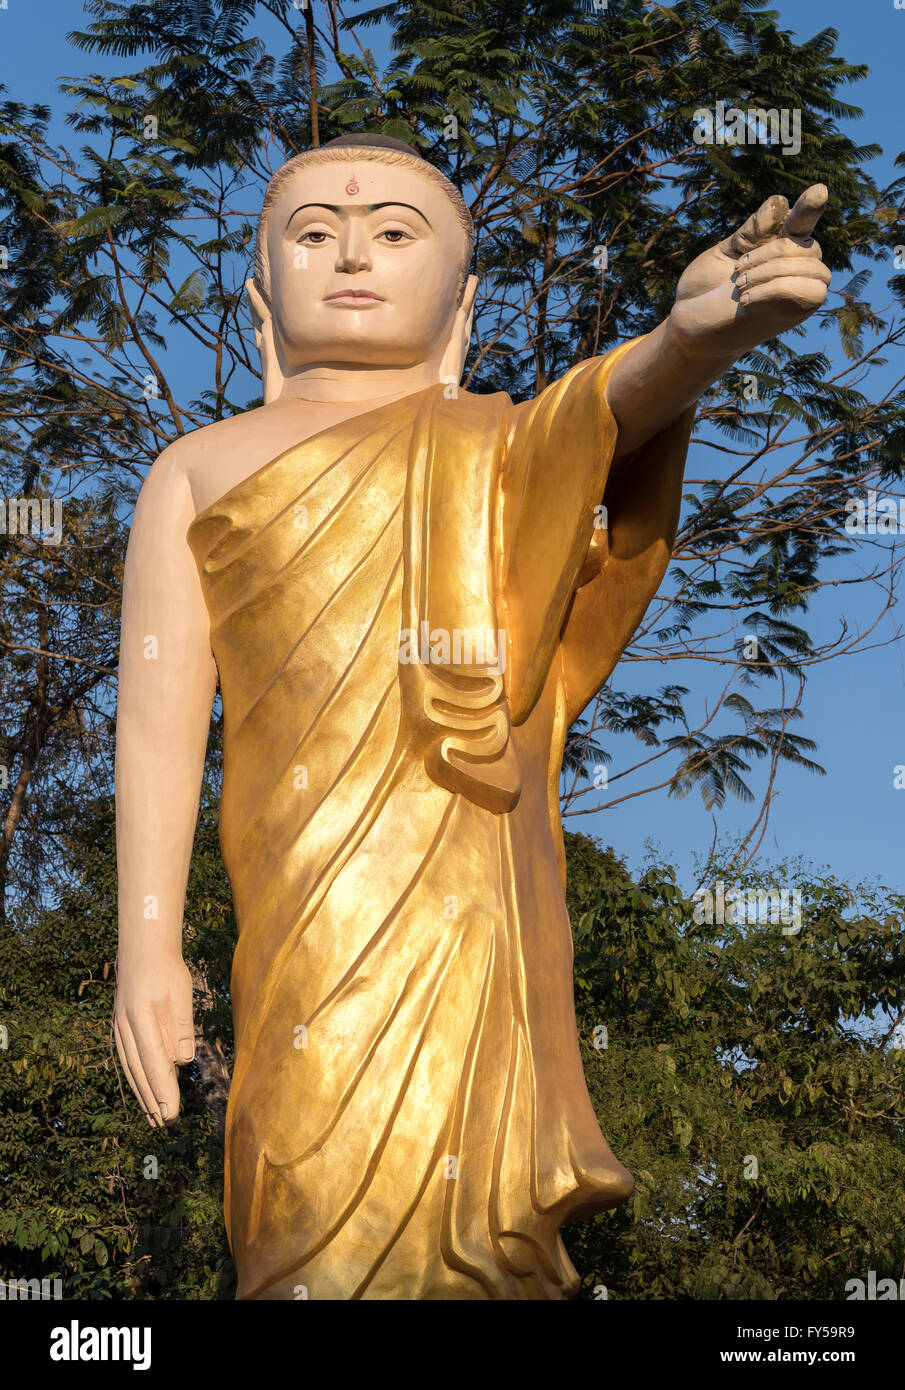 Estatua del Buda con brazo extendido y señalando con el dedo, Naung Daw Gyi Mya Tha Lyaung, Bago, Birmania, Myanmar Foto de stock